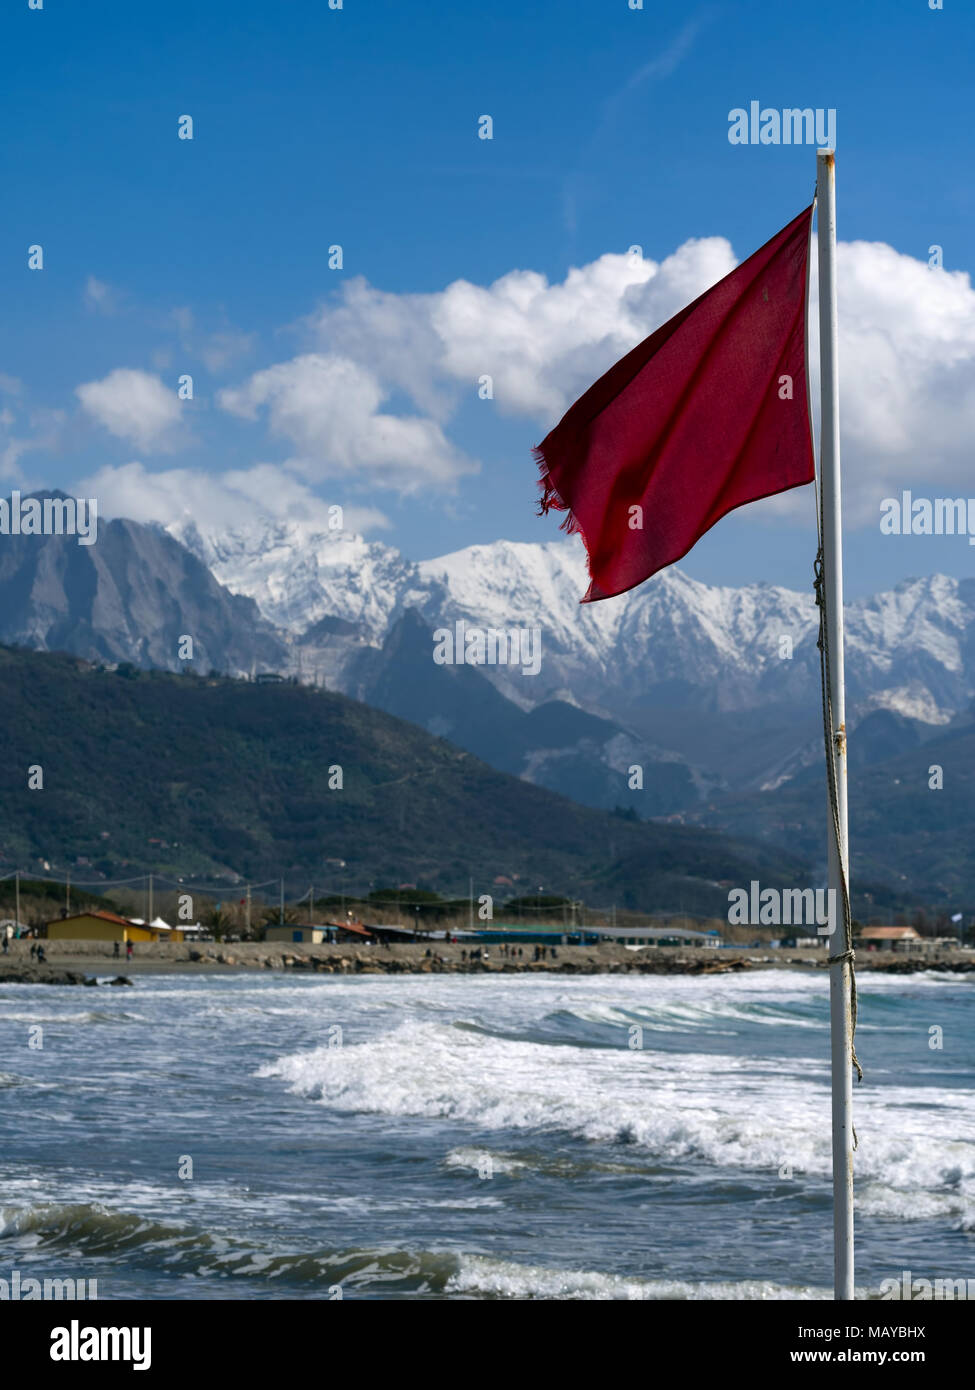 Un indicateur d'alerte rouge sur la plage près de Massa Carrara, Italie. Remarque differential focus, l'accent sur le drapeau. Banque D'Images